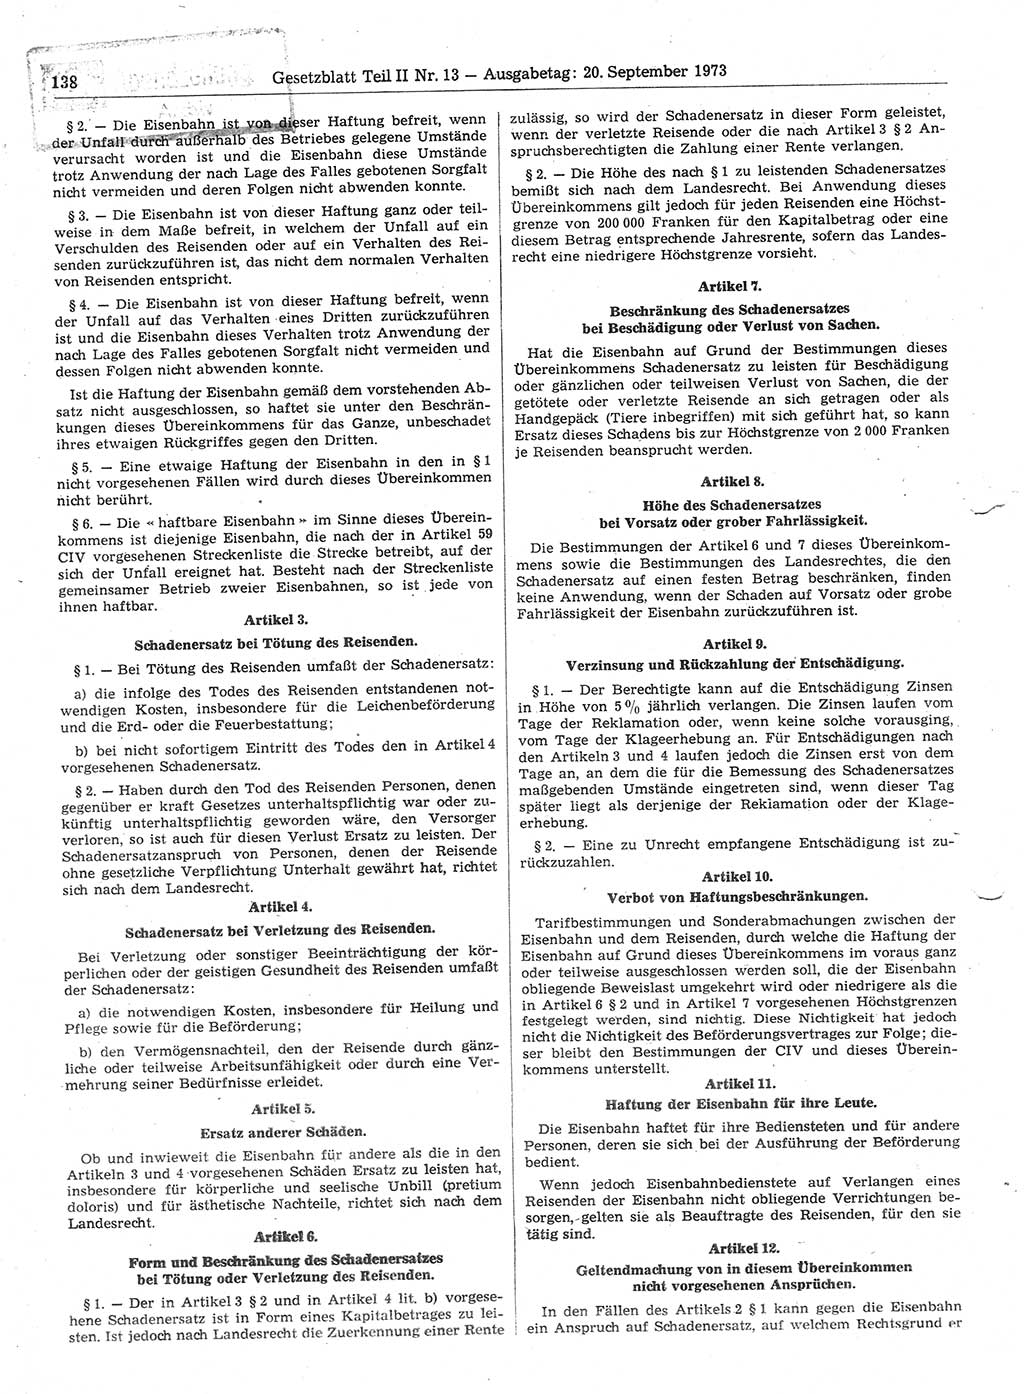 Gesetzblatt (GBl.) der Deutschen Demokratischen Republik (DDR) Teil ⅠⅠ 1973, Seite 138 (GBl. DDR ⅠⅠ 1973, S. 138)